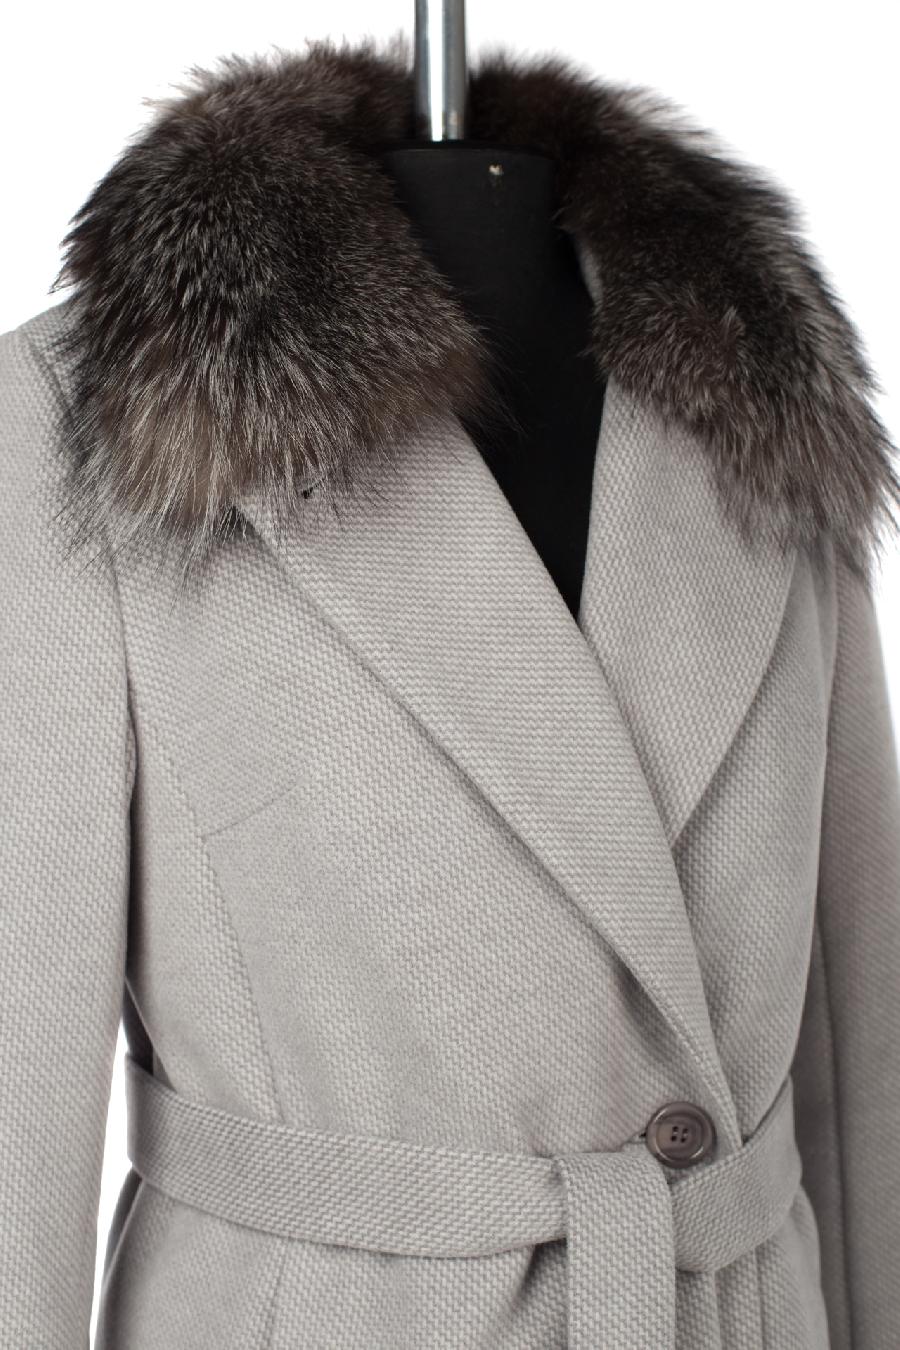 02-3045 Пальто женское утепленное (пояс) Микроворса светло-серый